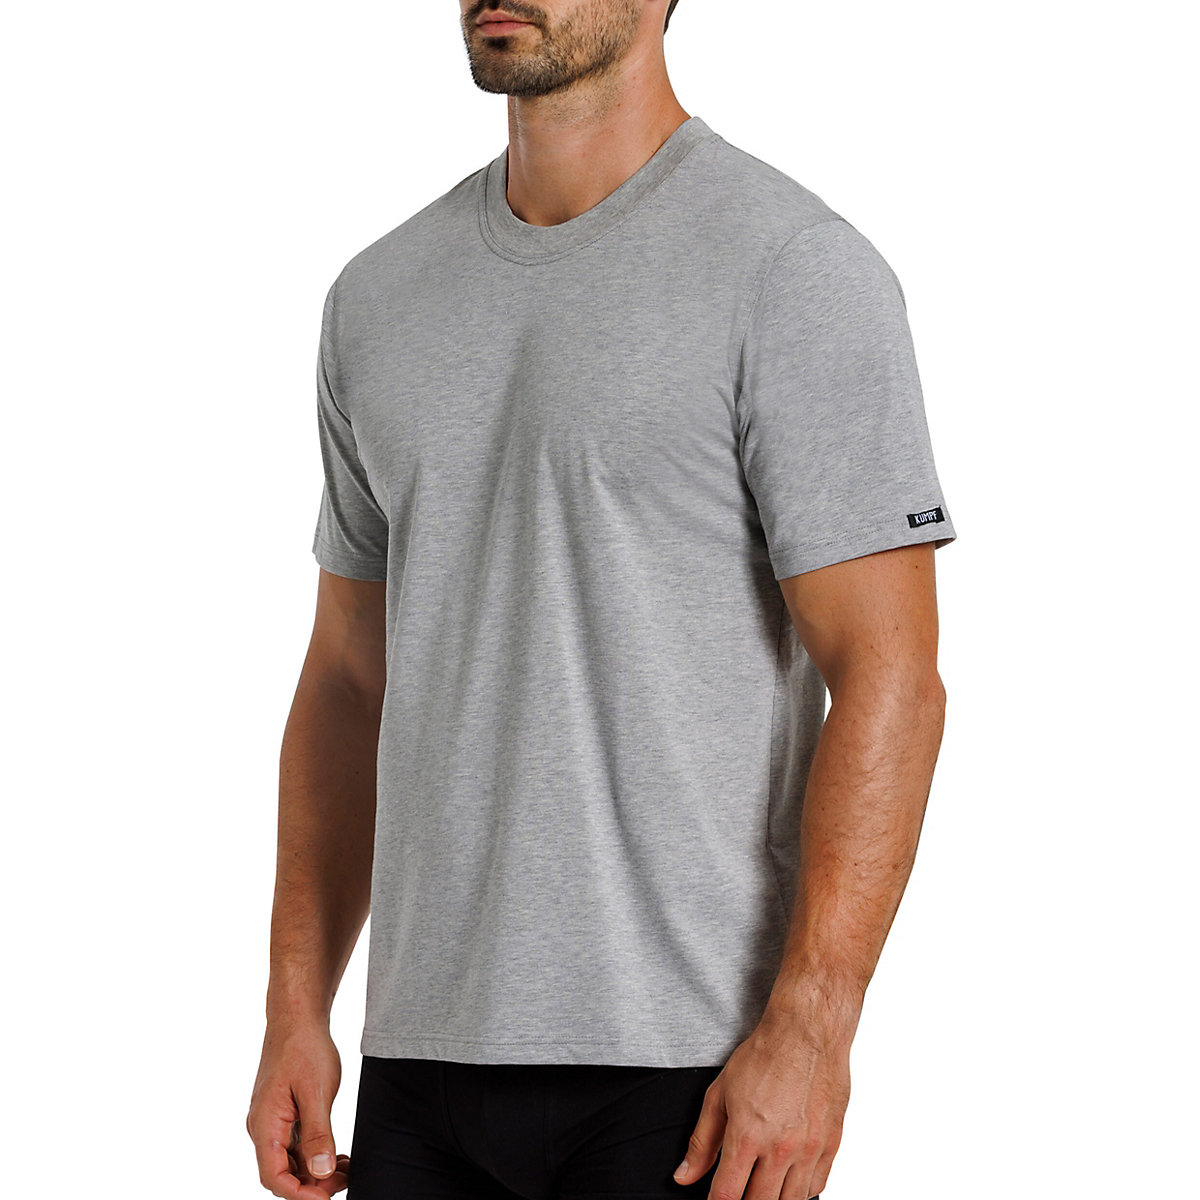 Kumpf Body Fashion 2er Sparpack Herren T-Shirt Bio Cotton Unterhemden schwarz/grau